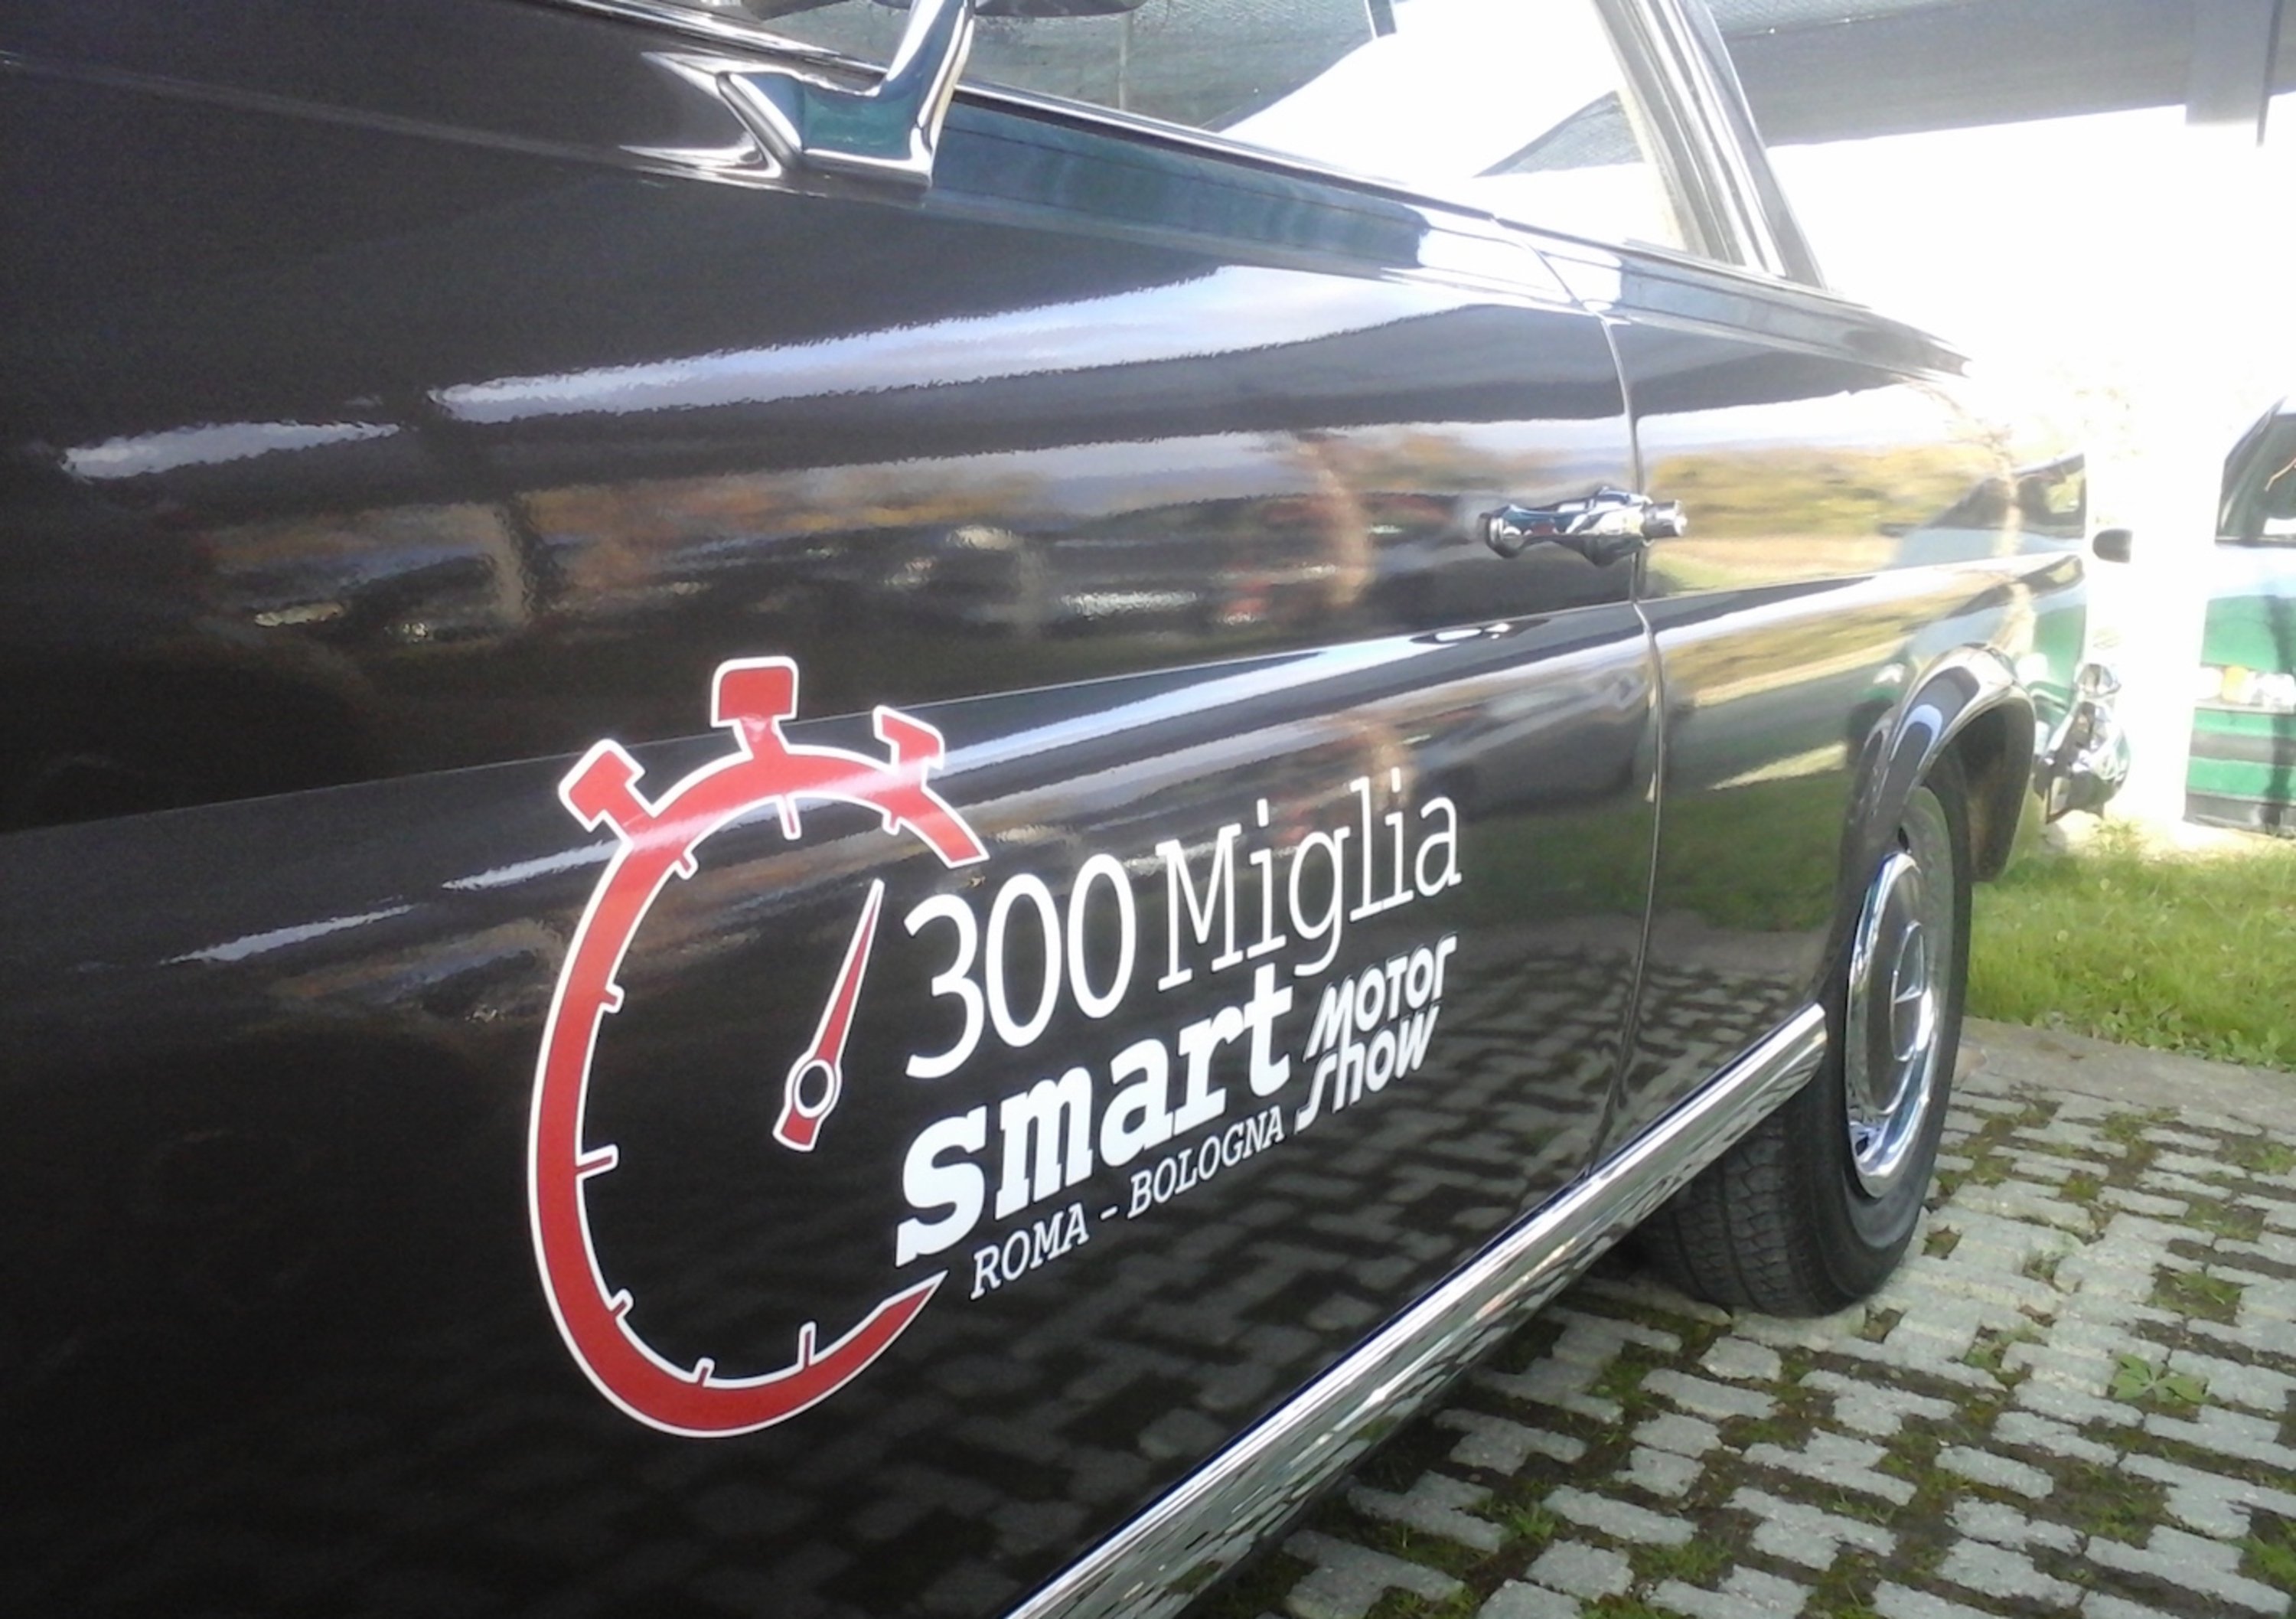 300 Miglia Smart: al Motor Show di corsa!